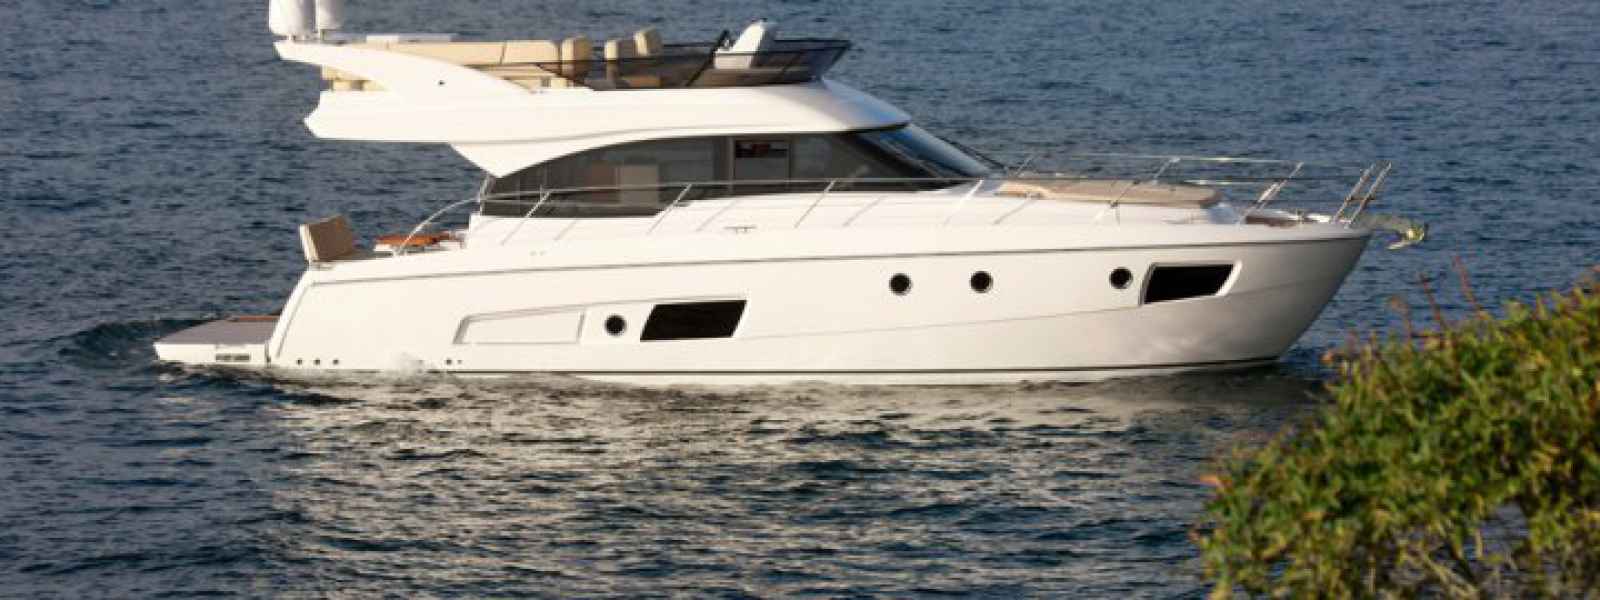 Motor boat Virtess 420 Fly